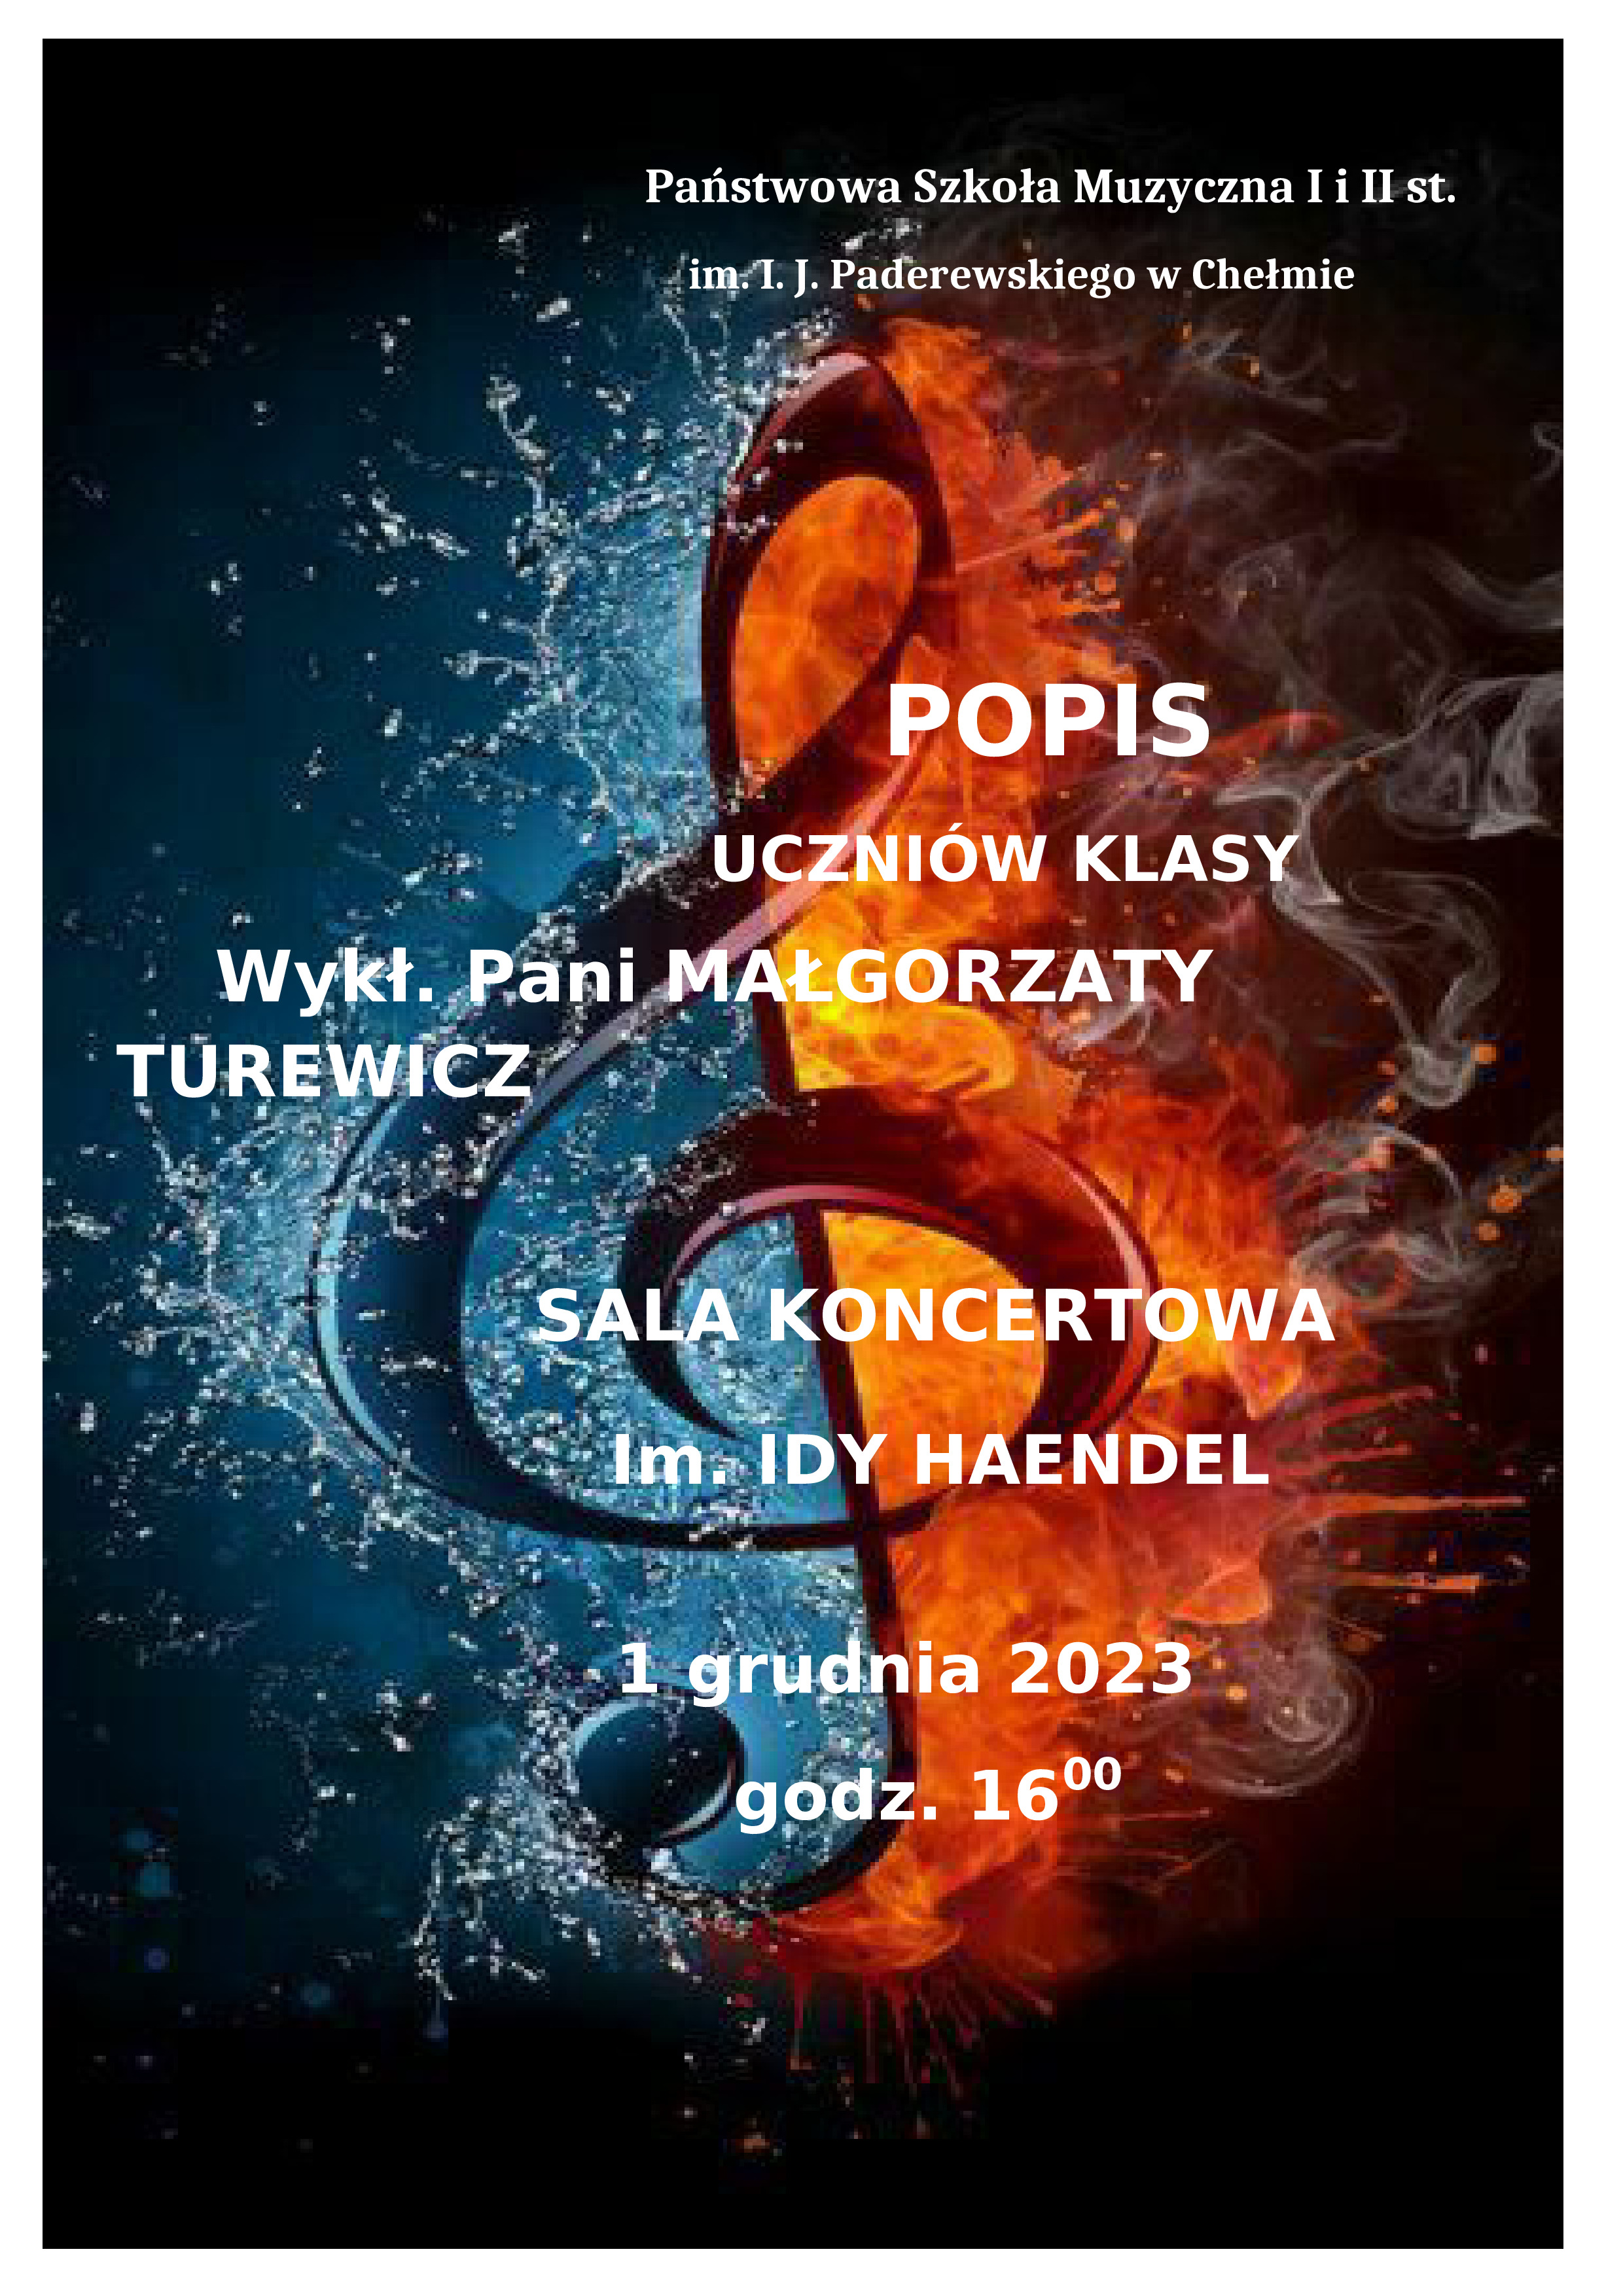 popis klasy fortepianu Małgorzaty Turewicz 01.12.2023